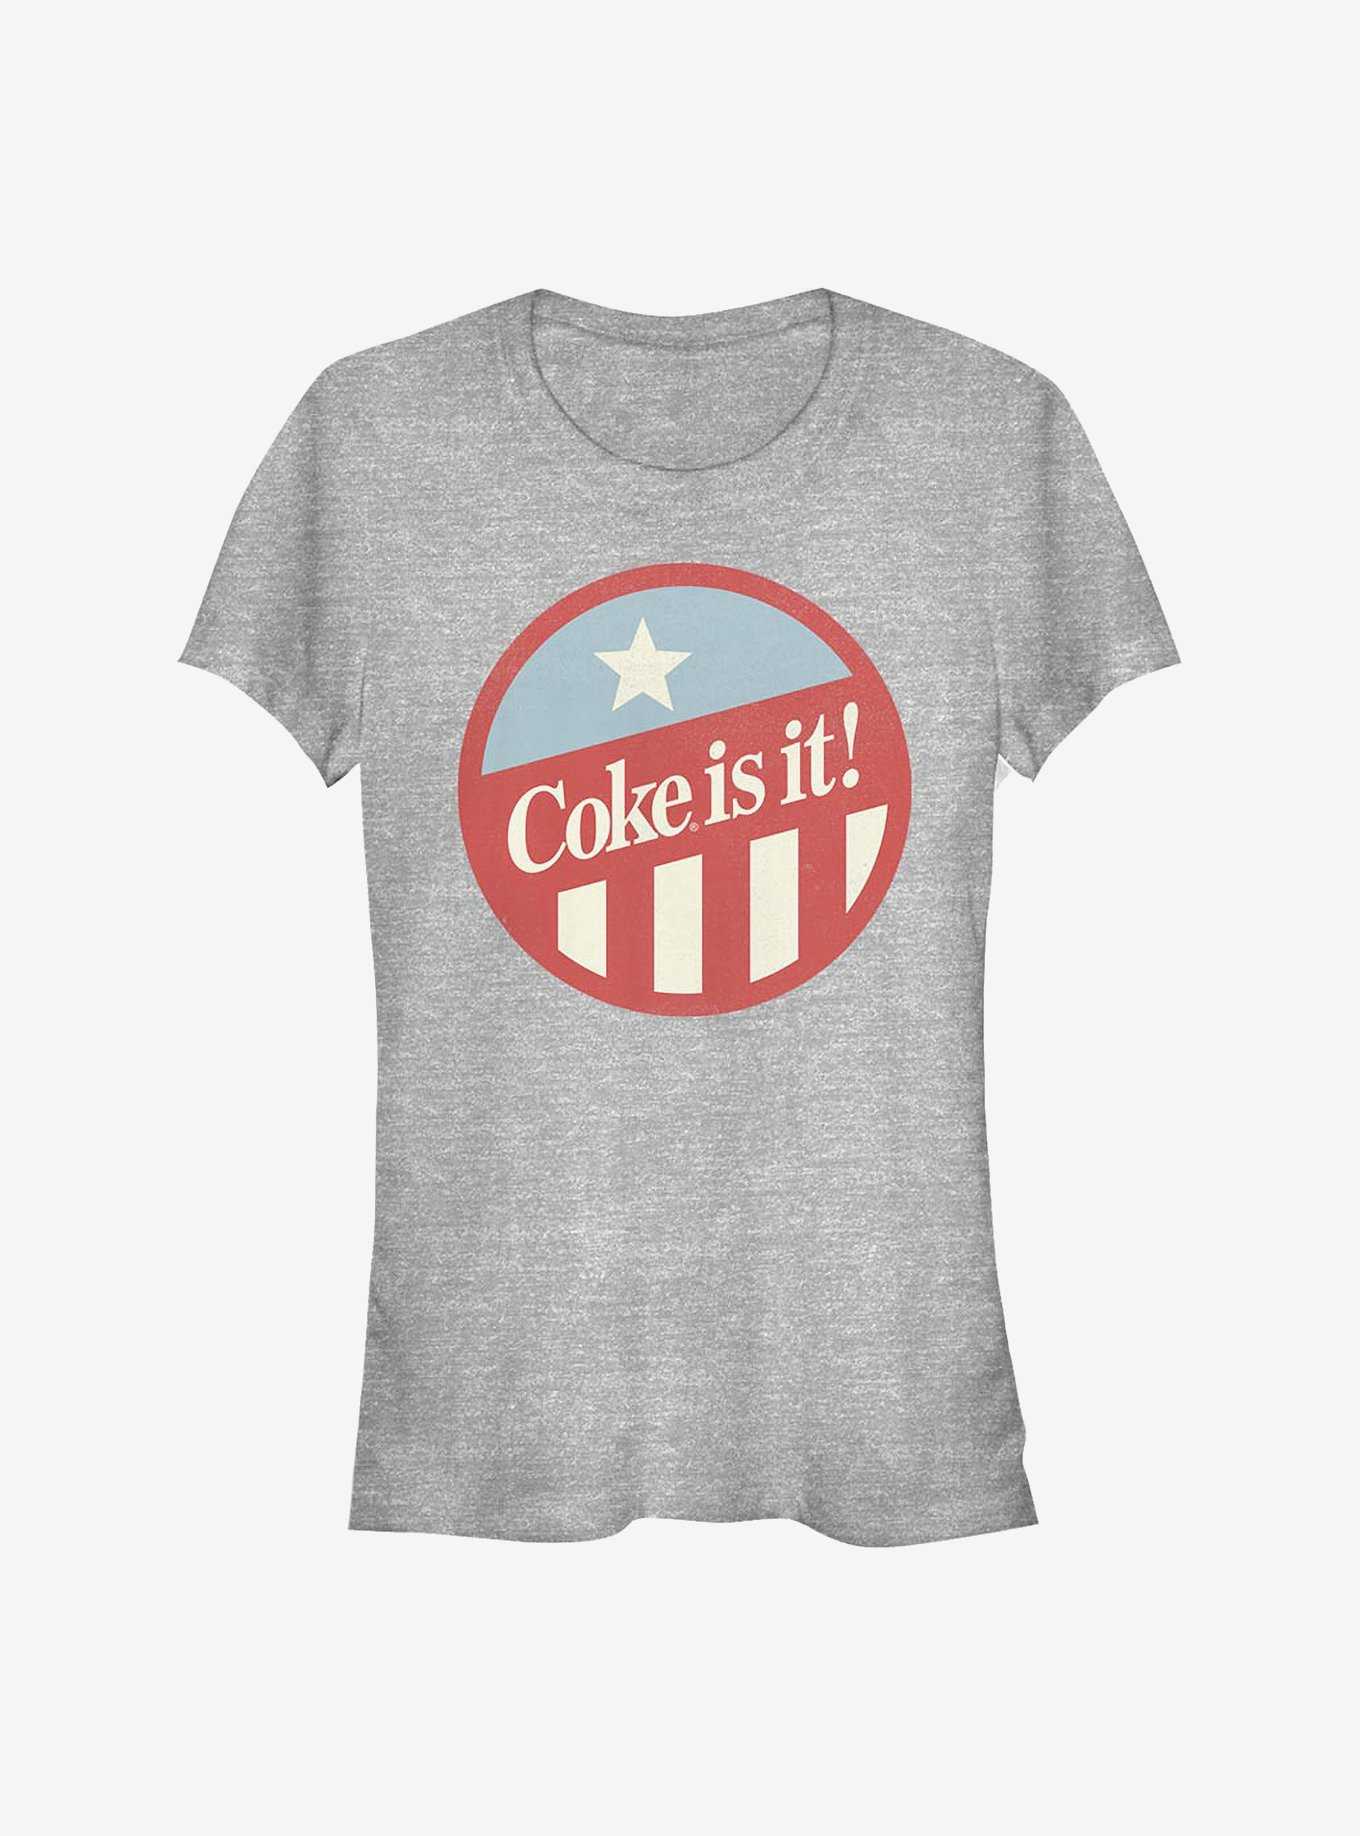 Coca-Cola Coke Is It! Girls T-Shirt, , hi-res